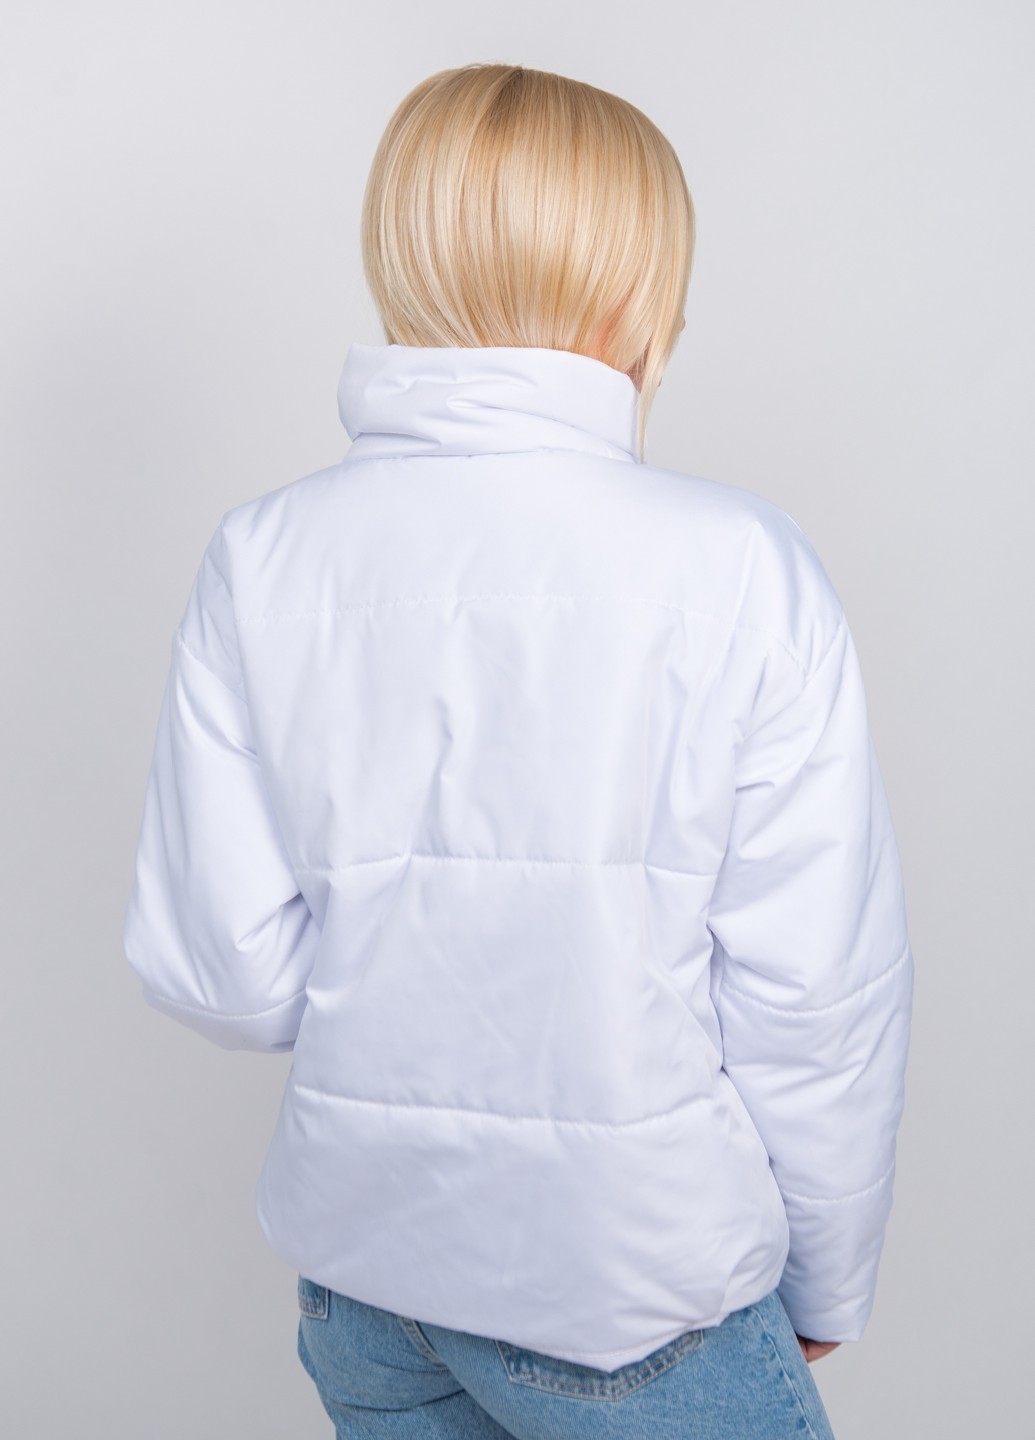 Куртка женская демисезонная белая 280/107 в интернет-магазине